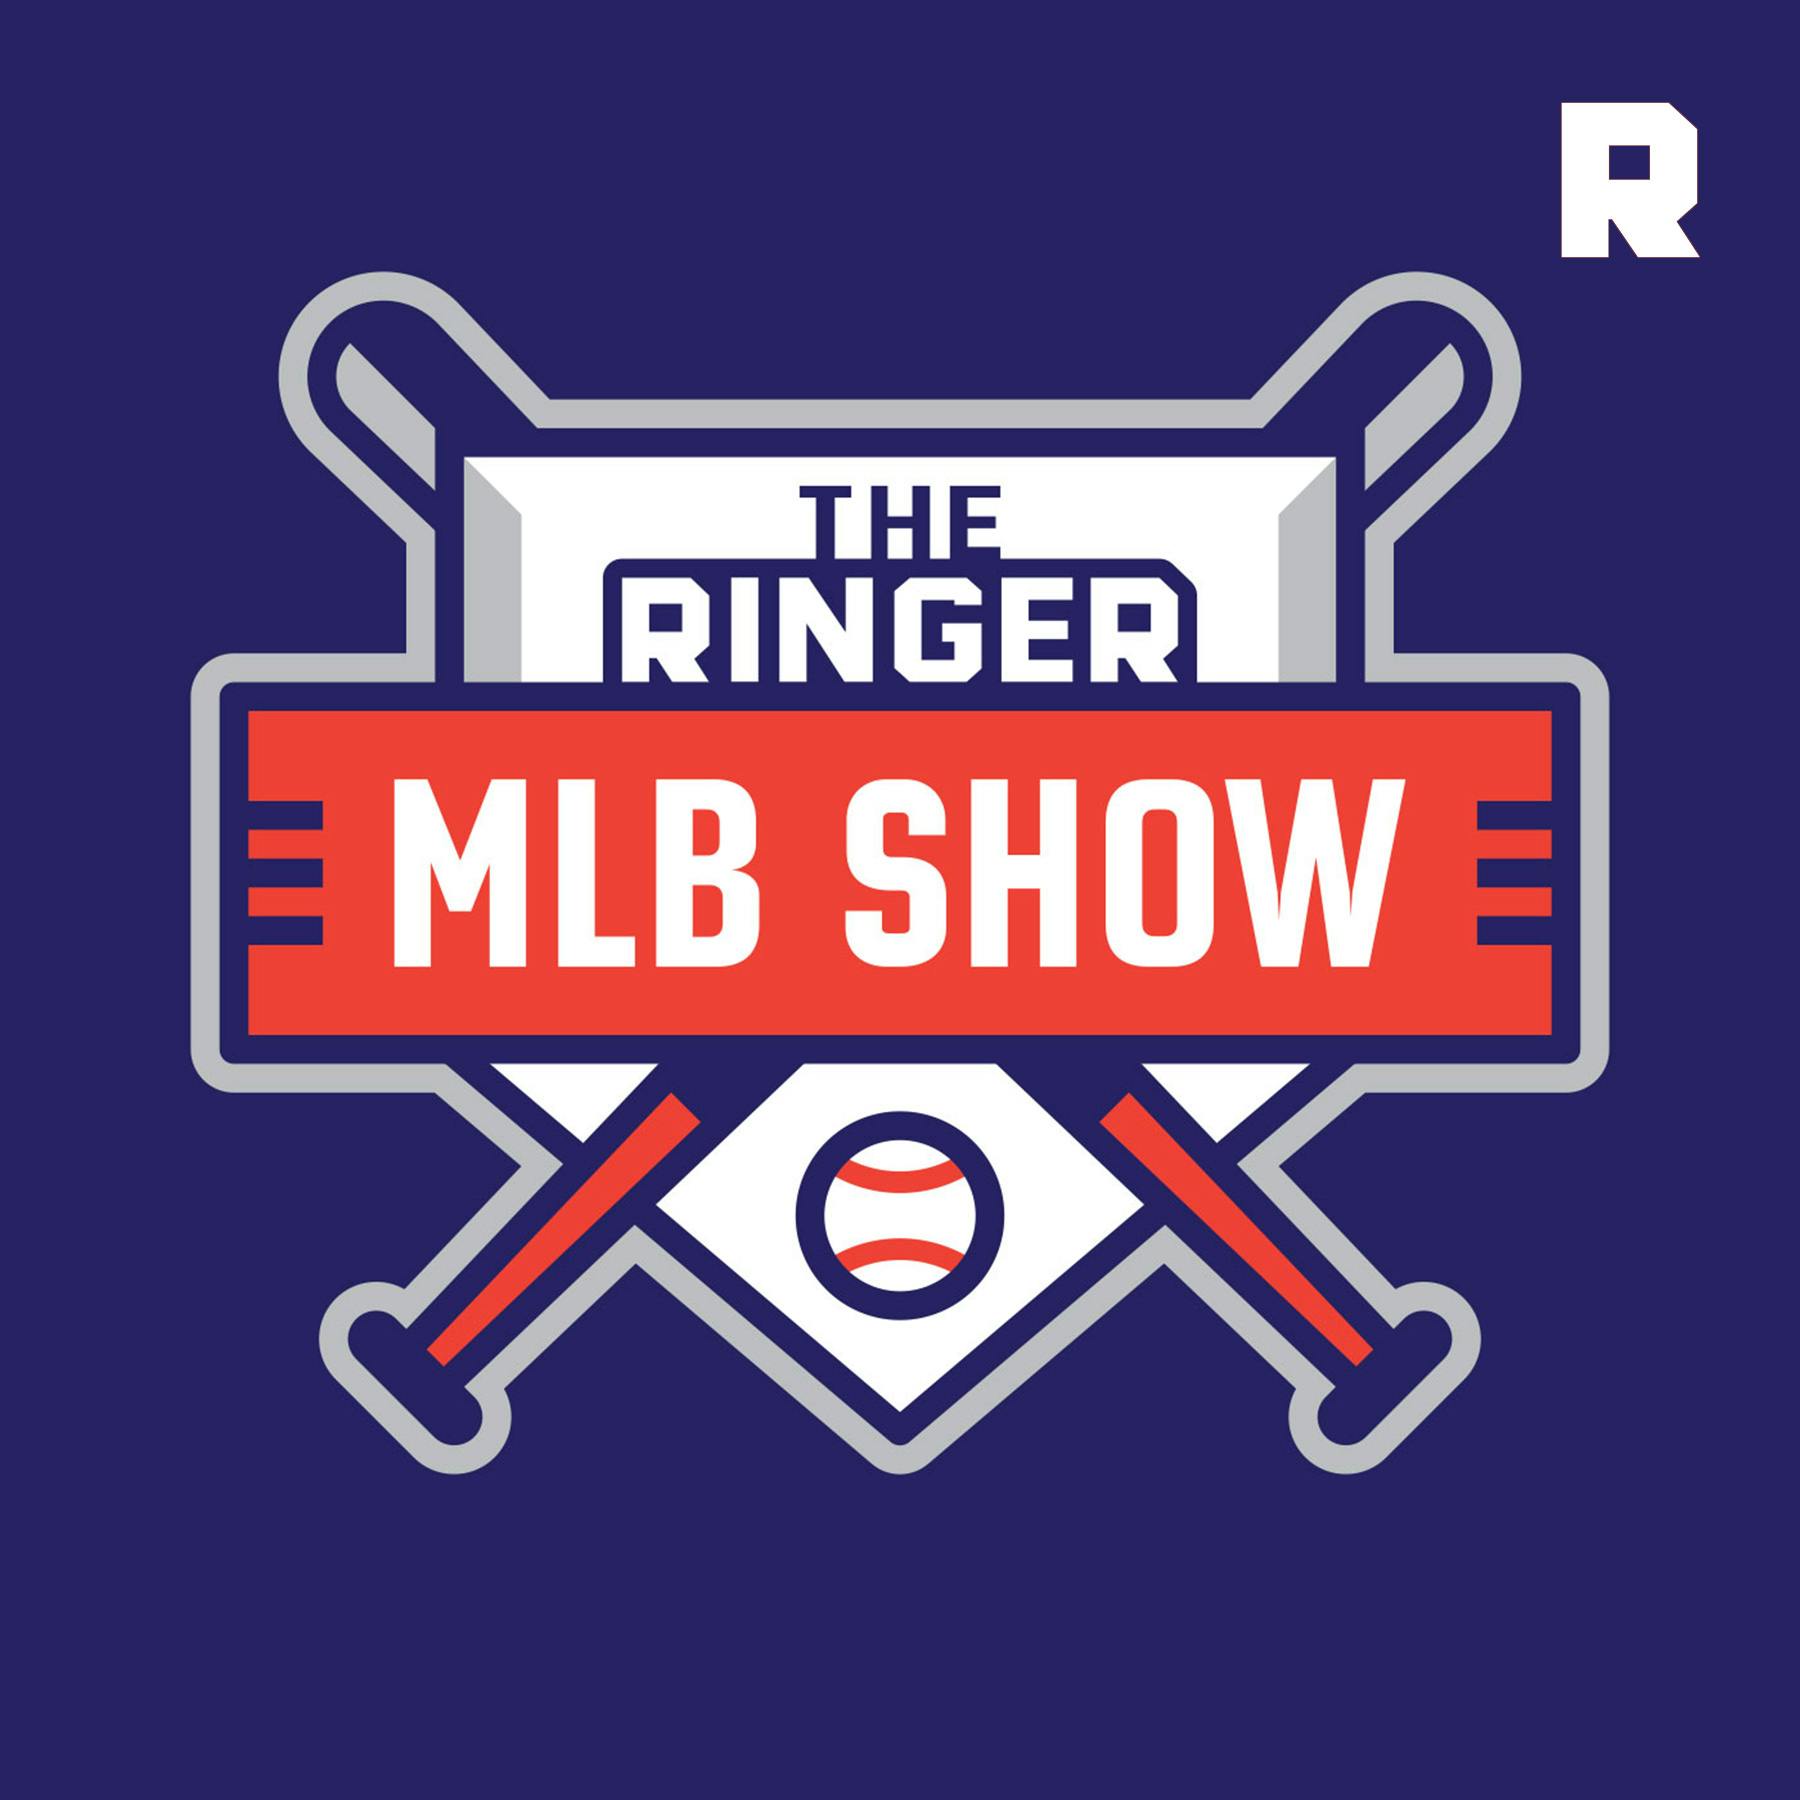 The Ringer MLB Show:The Ringer